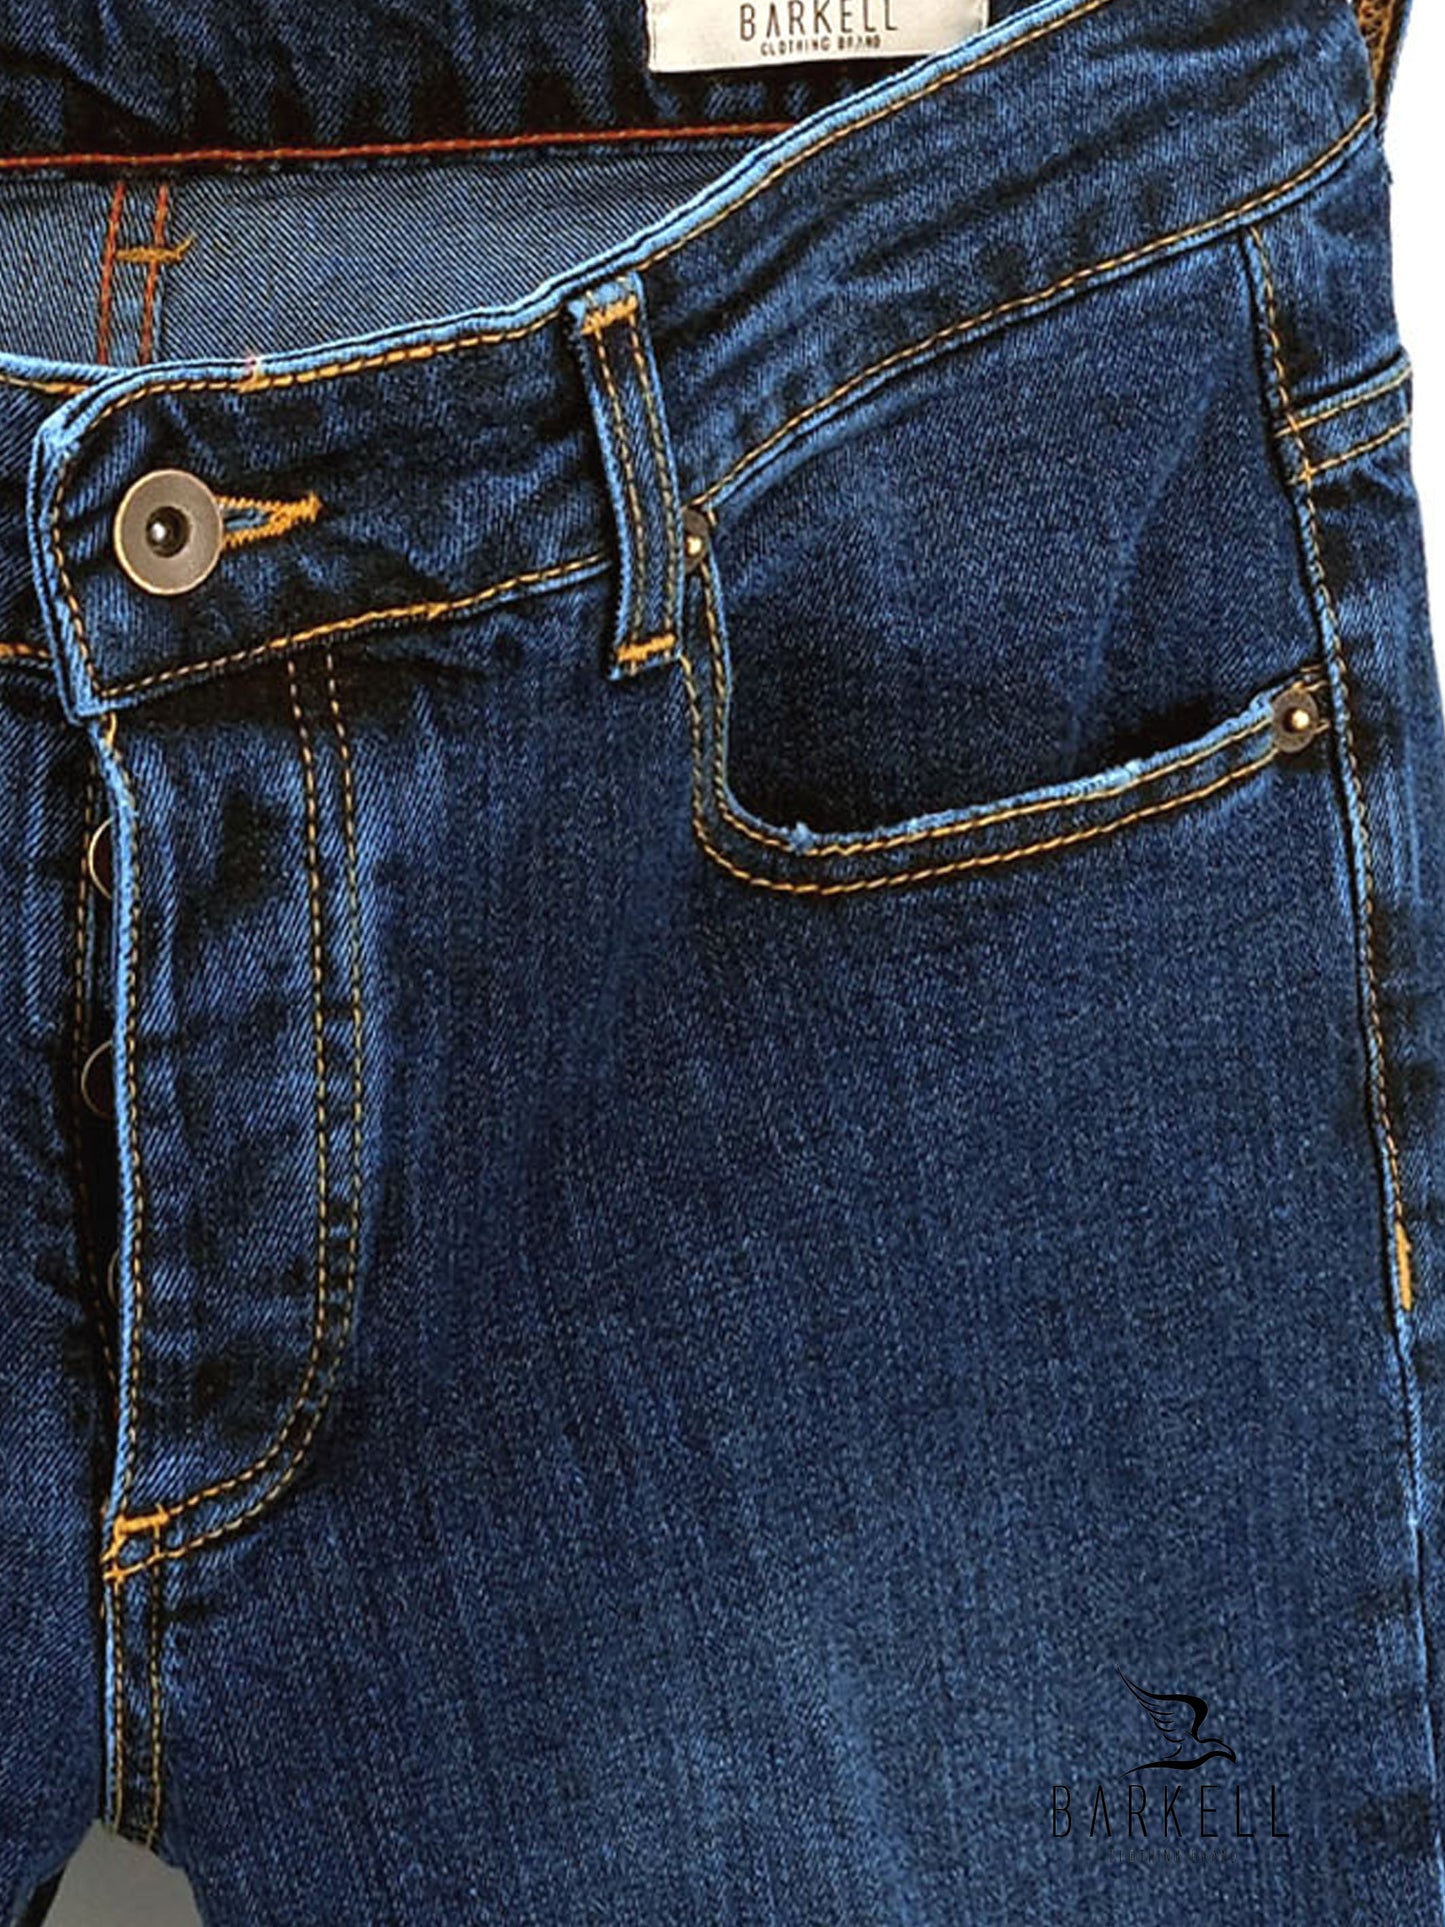 Jeans Modello Cinque Tasche Lavaggio Medio Stone Wash